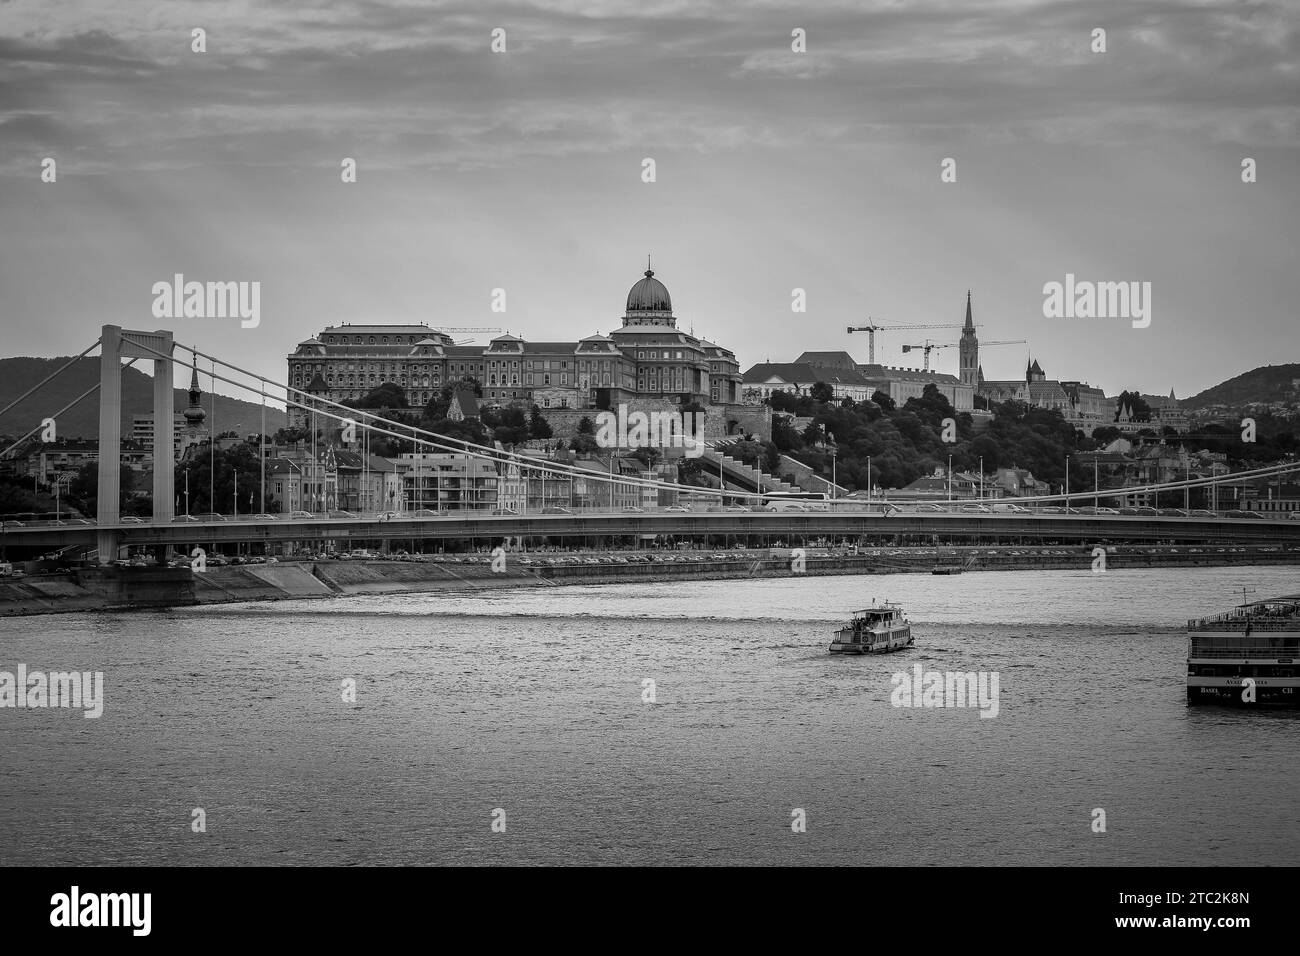 Budapest en noir et blanc : vue sur le Danube, le pont Elisabeth (Erzsébet híd) et le château de Buda (Budavári Palota), rayons du soleil à travers un ciel nuageux Banque D'Images